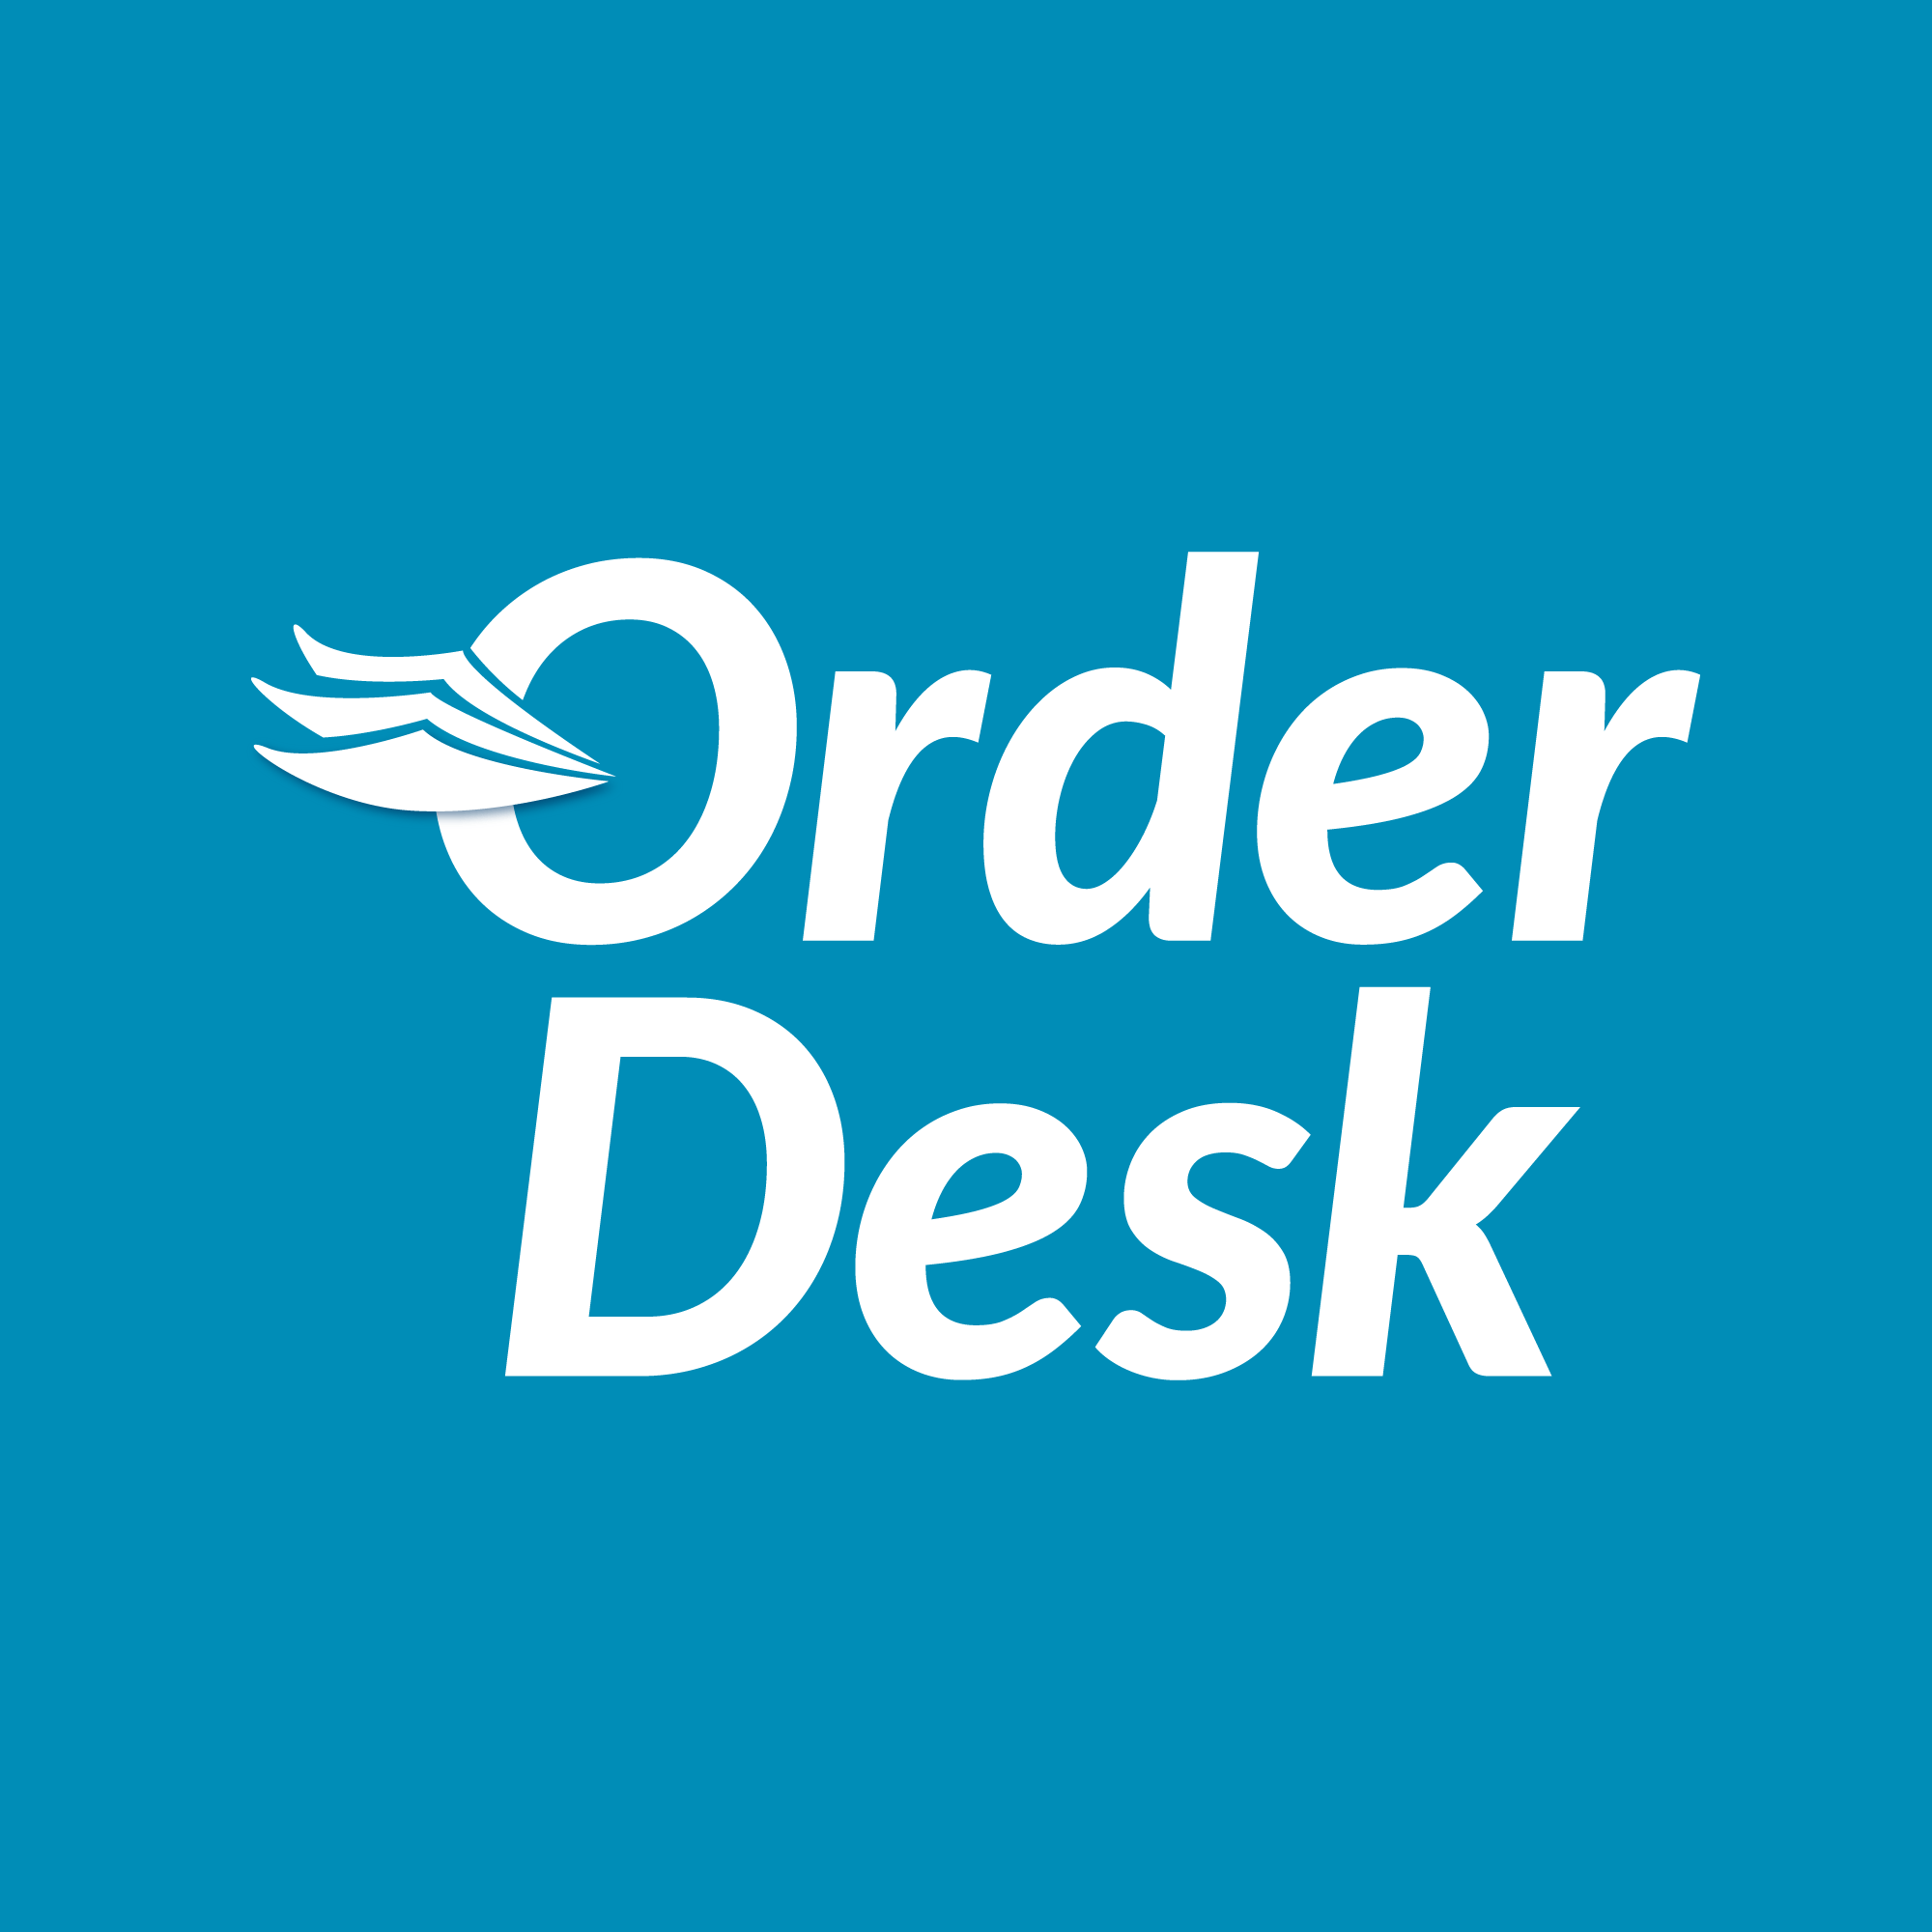 Desk.com Logo - Our Brand